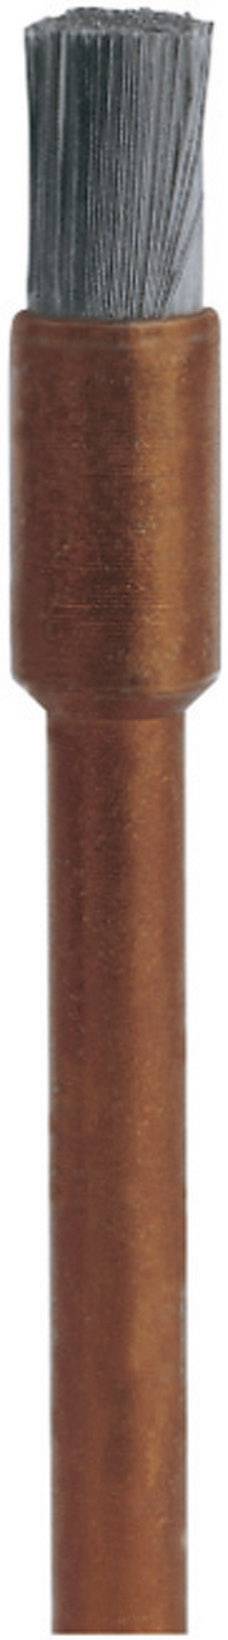 DREMEL 530, Dremel Brosse en acier inoxydable 15000 min-1 3.2 mm